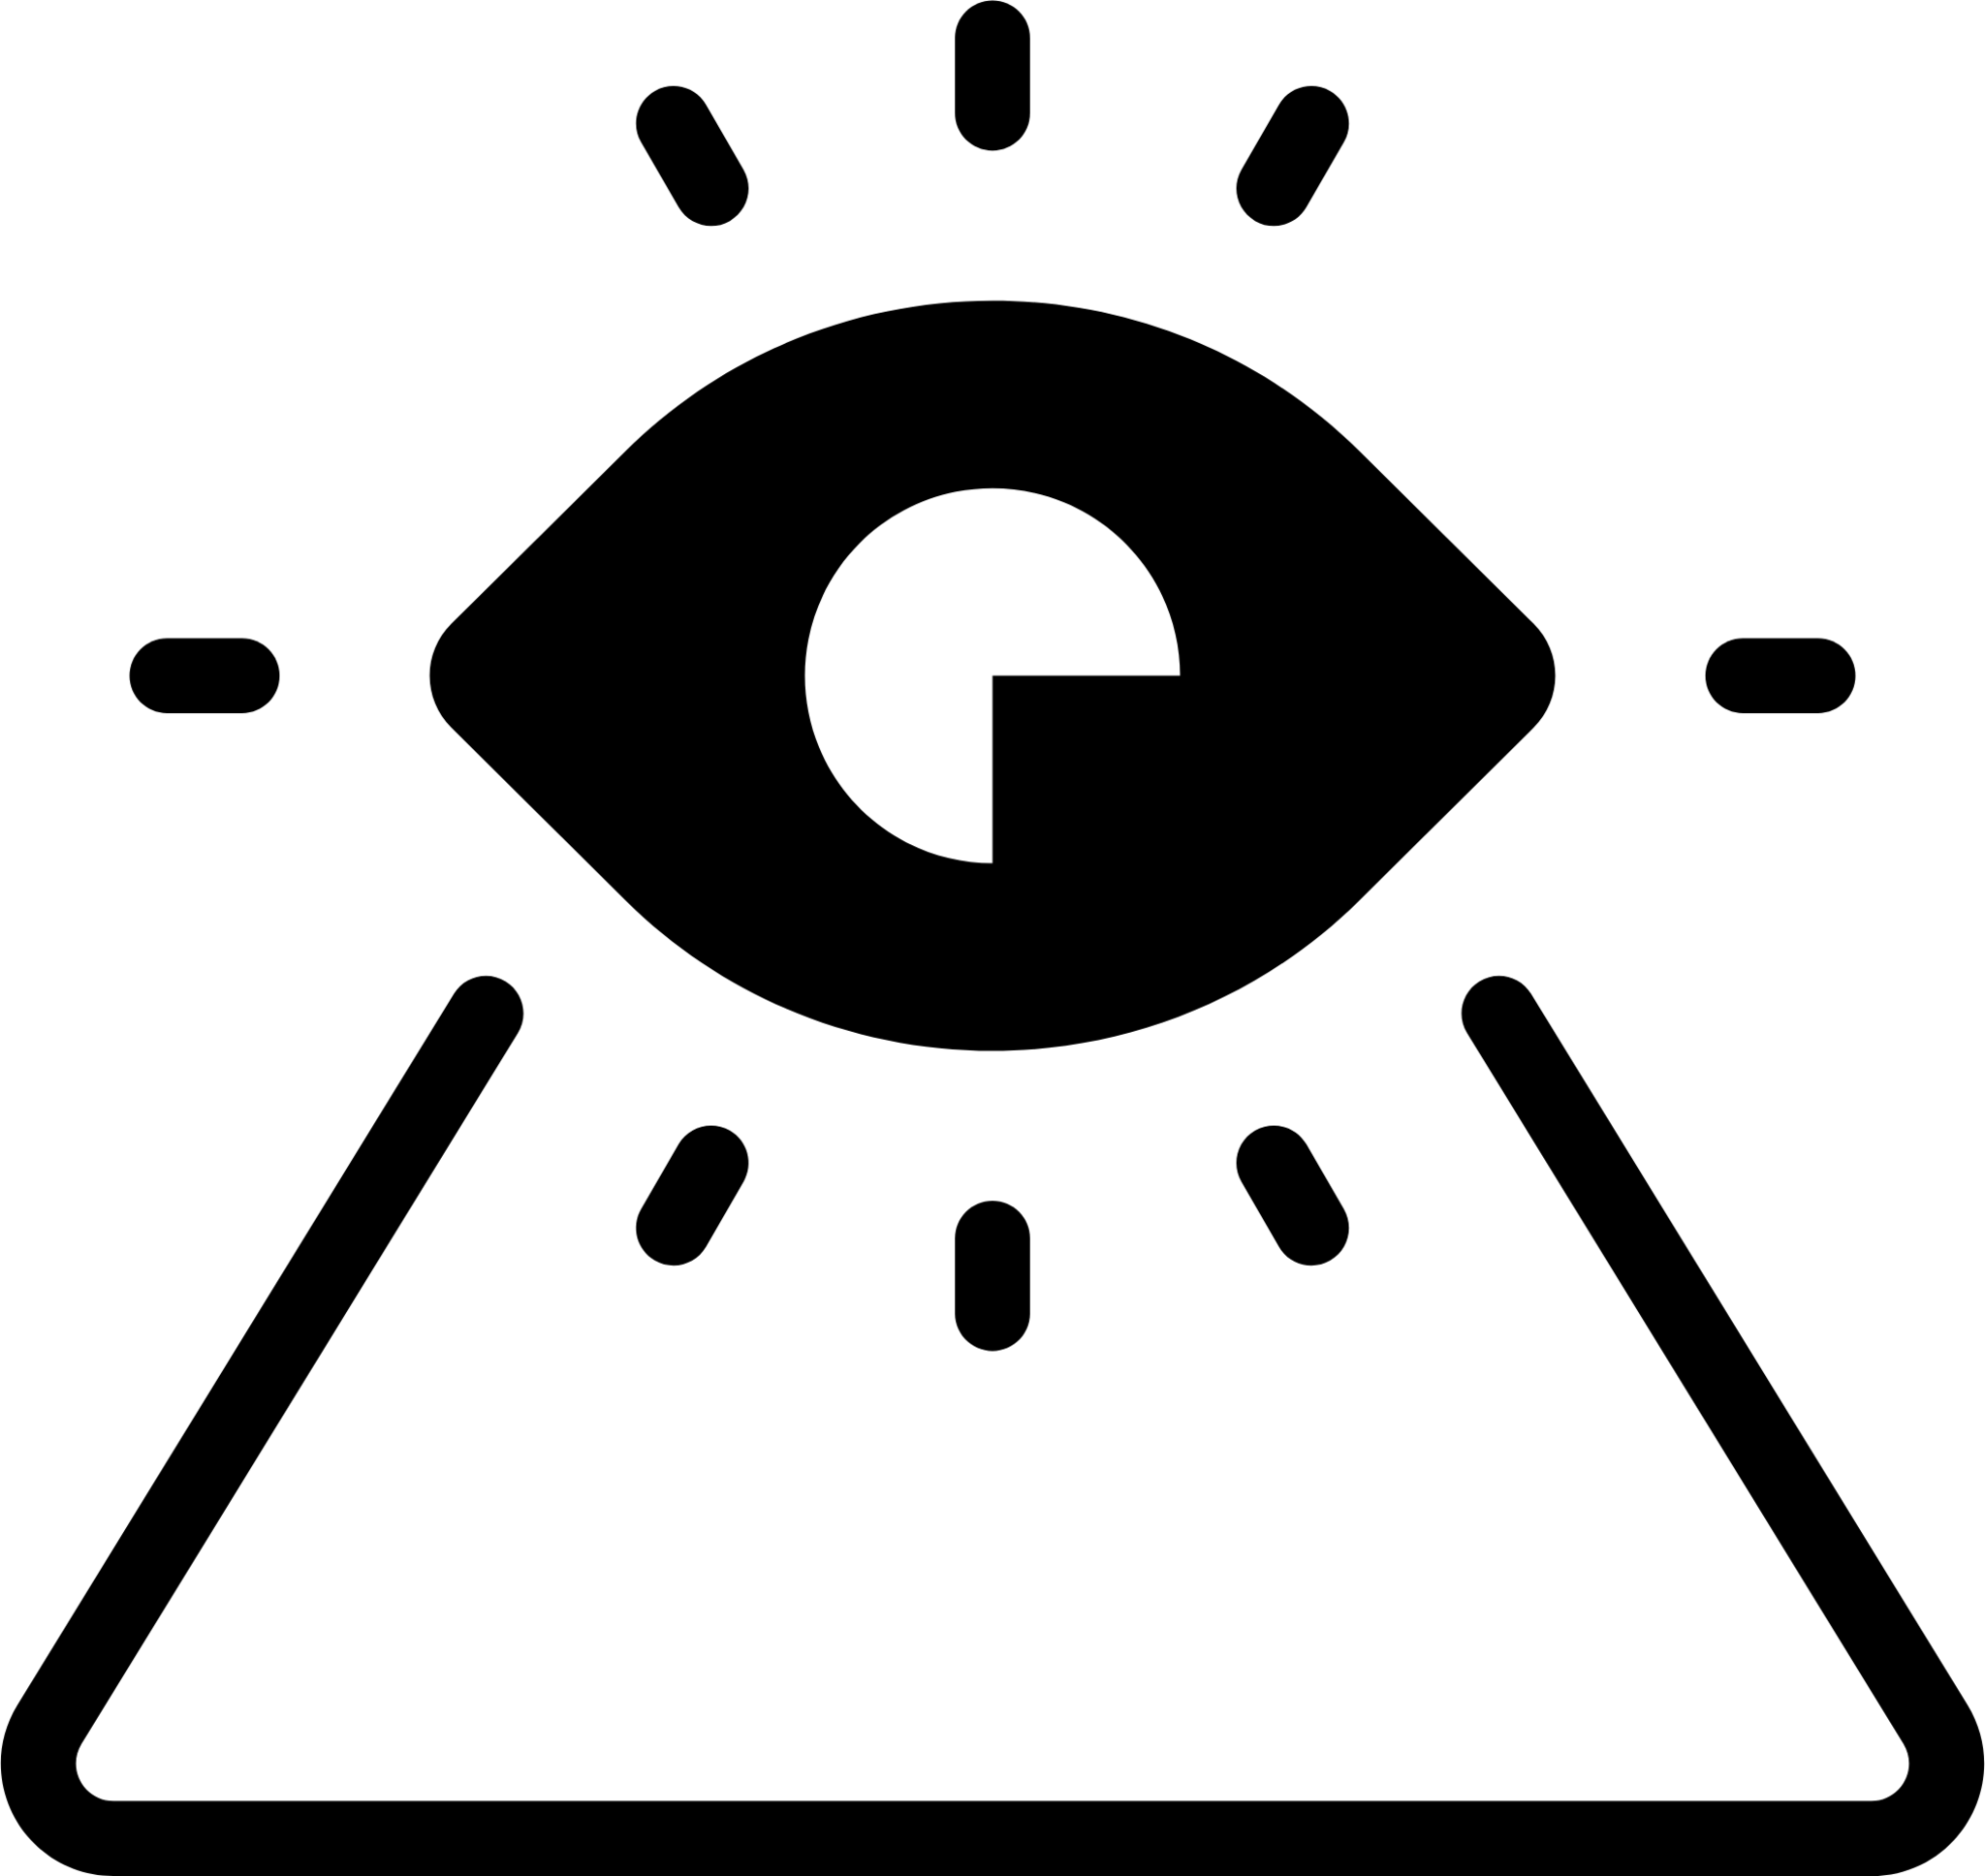 pyramid eye icon